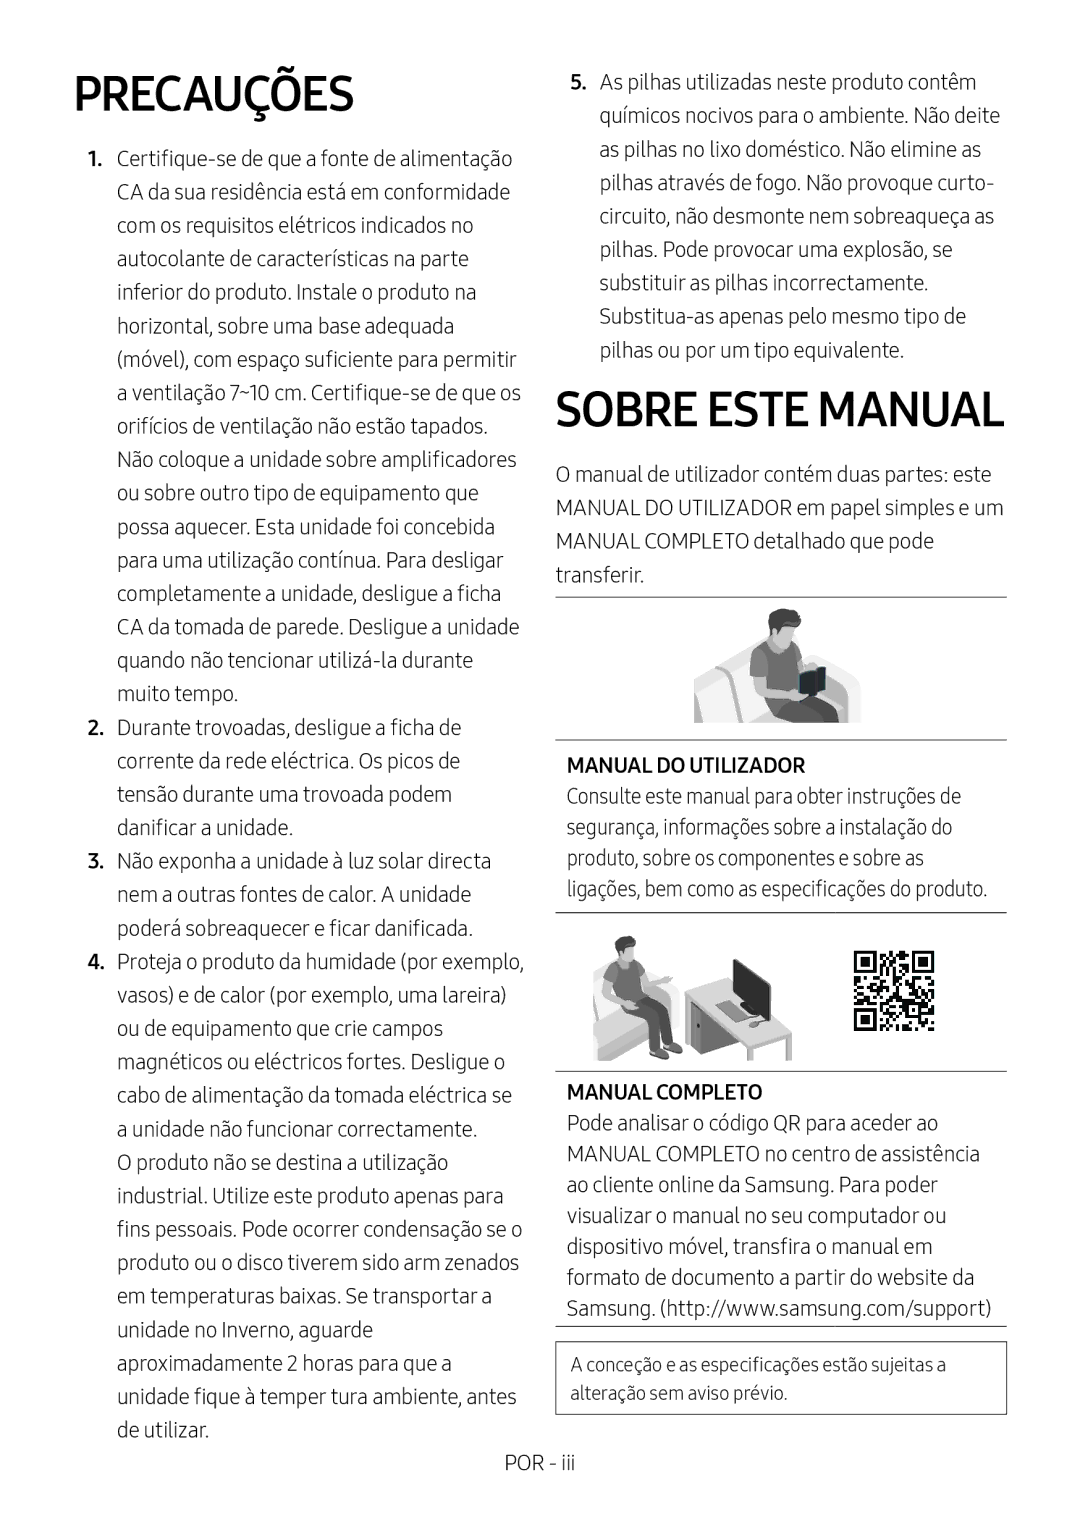 Samsung HW-N550/ZF manual Precauções, Manual do Utilizador, Manual Completo 